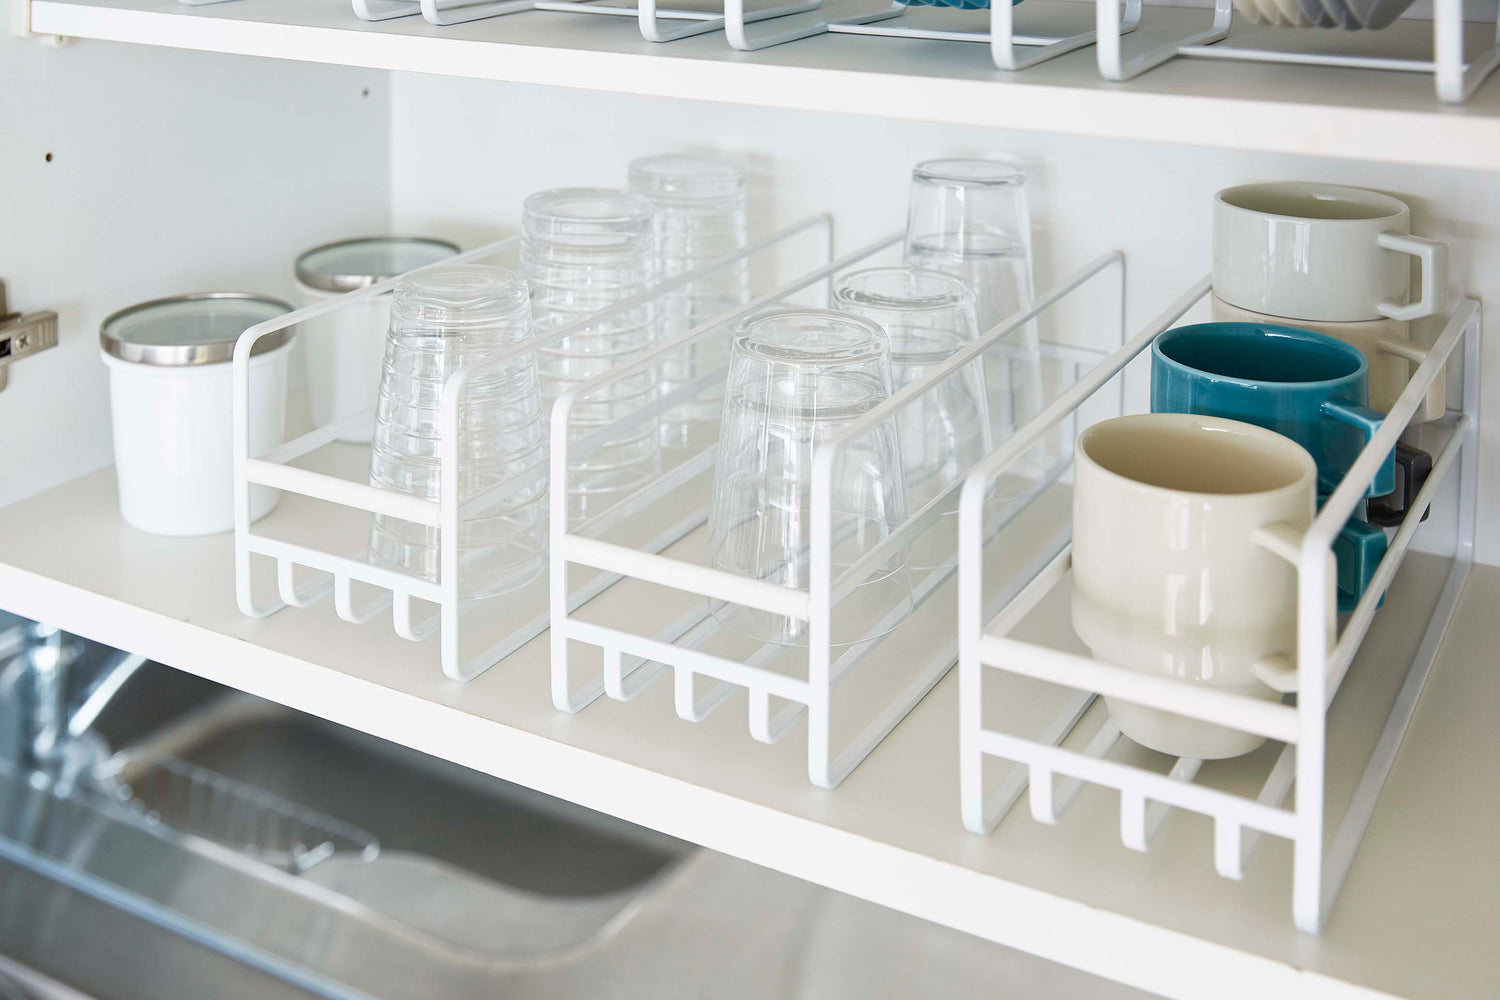 View 6 - Close up of 3 Yamazaki Home white Glass and Mug Cabinet Organizers on a shelf